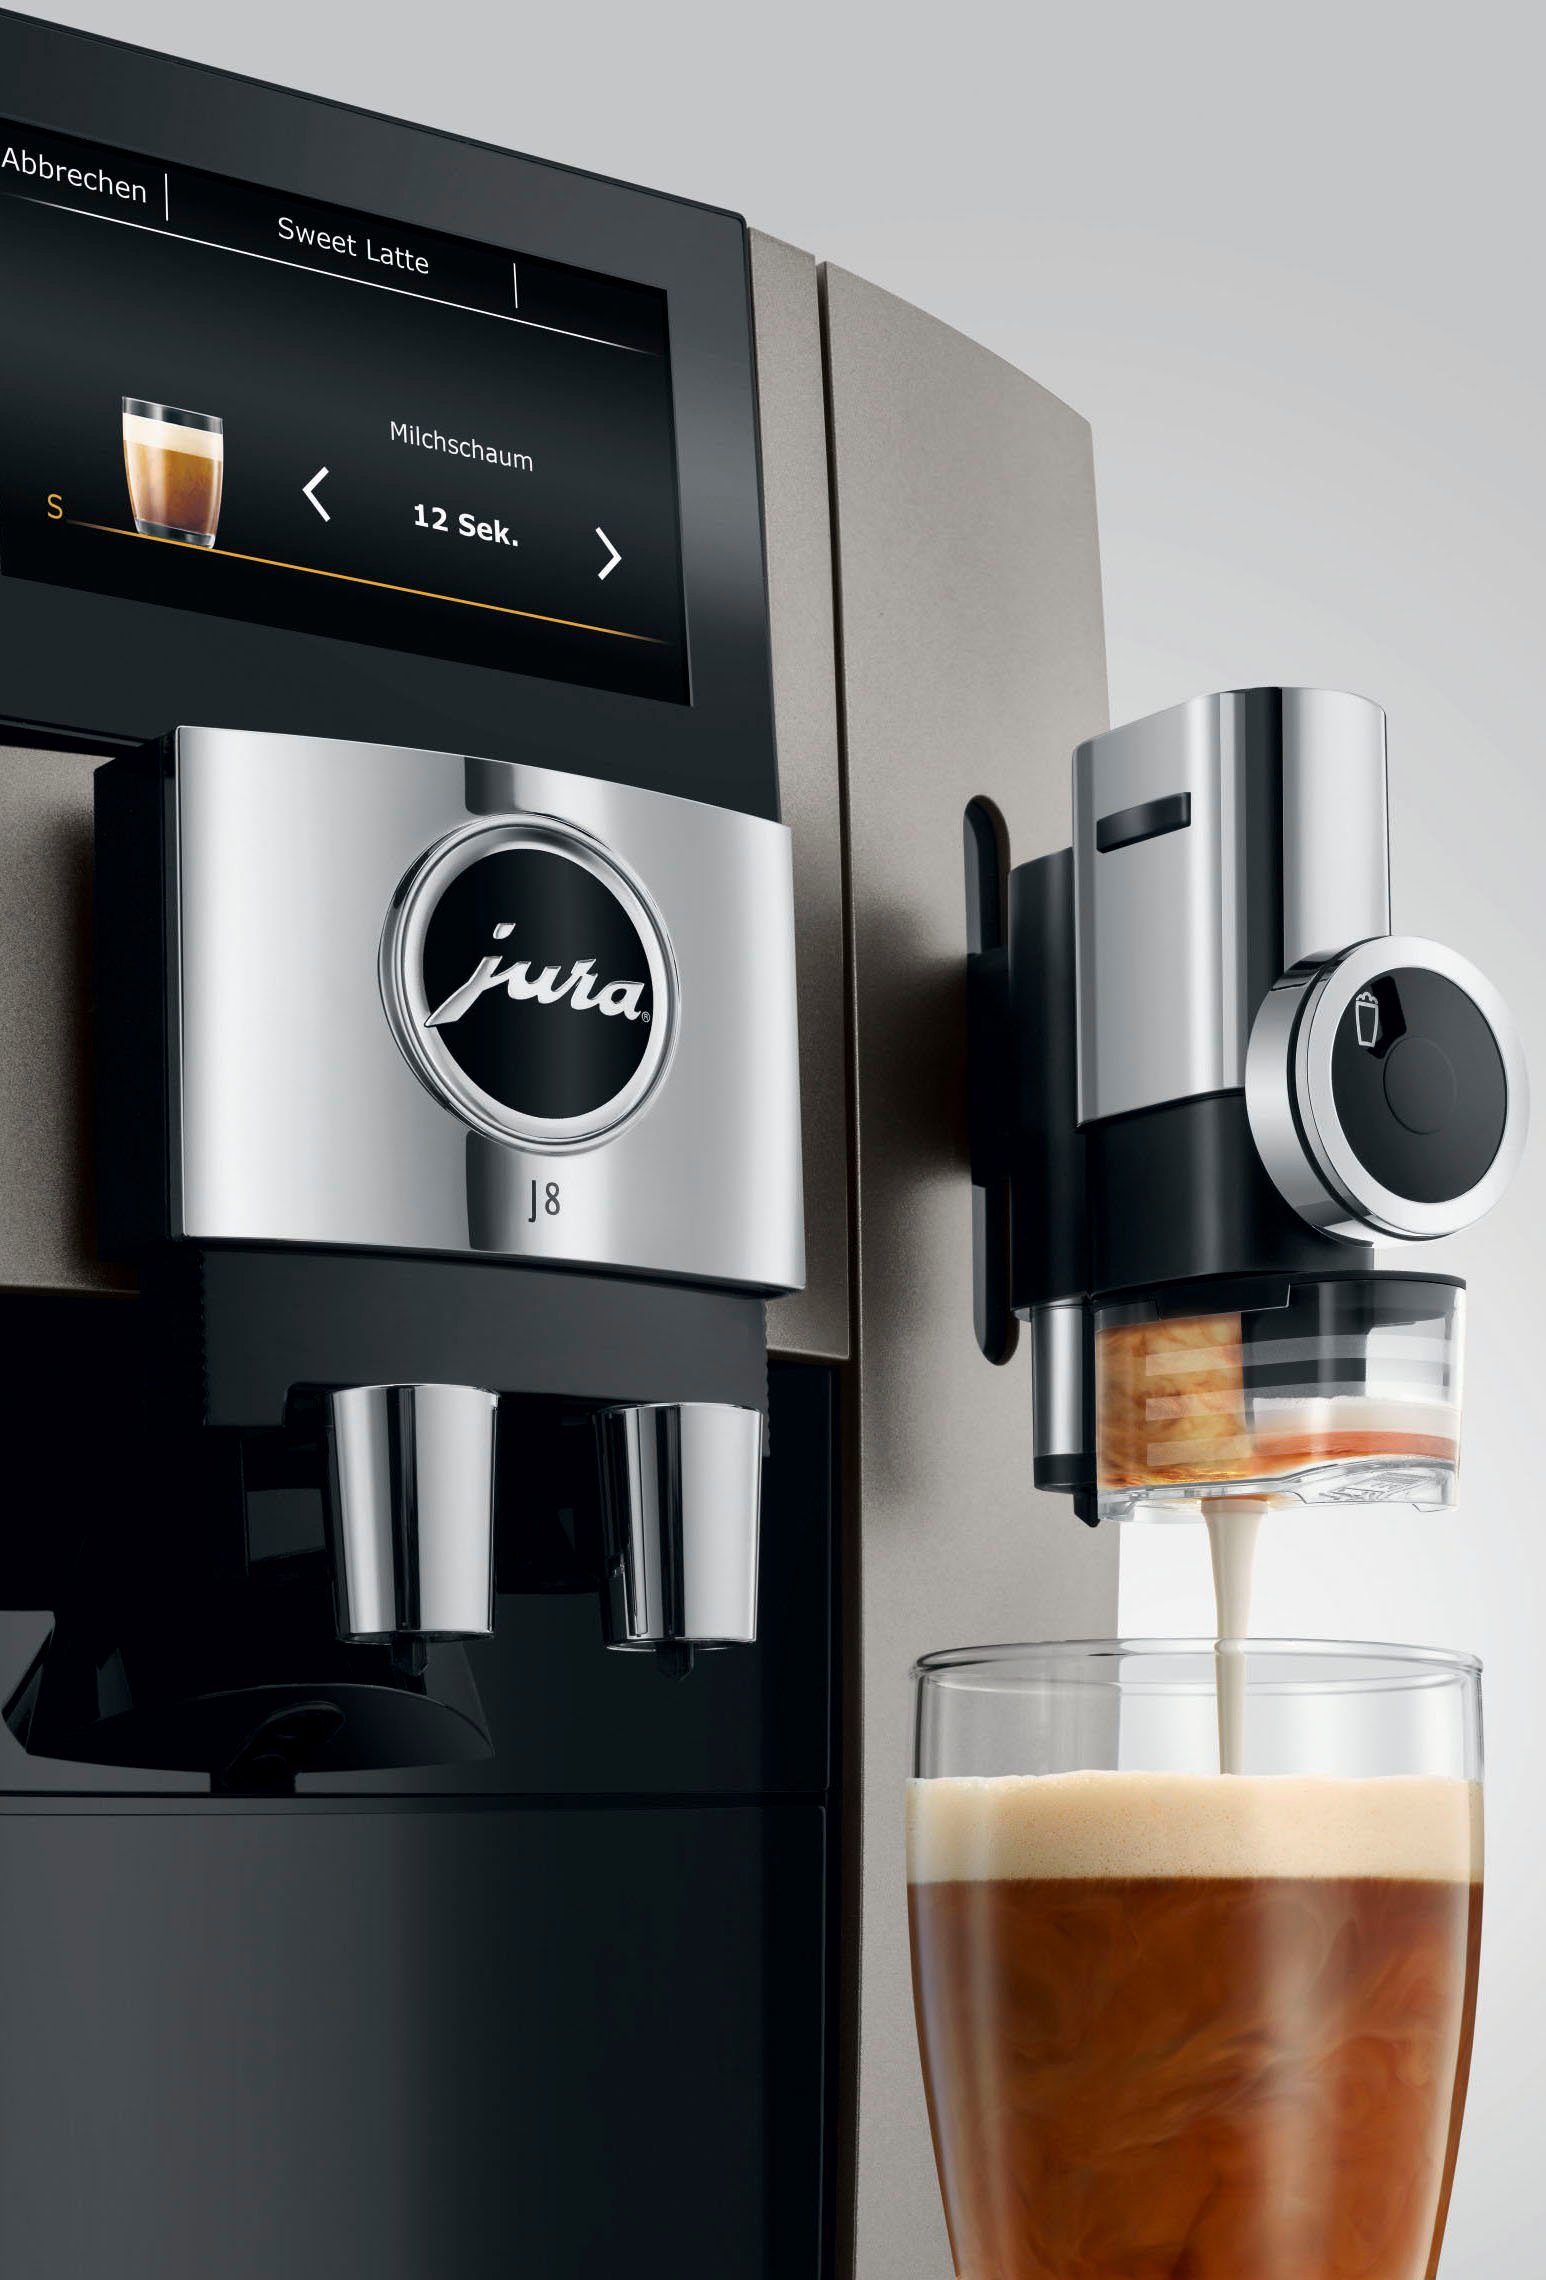 15471 (EA) J8 JURA Kaffeevollautomat